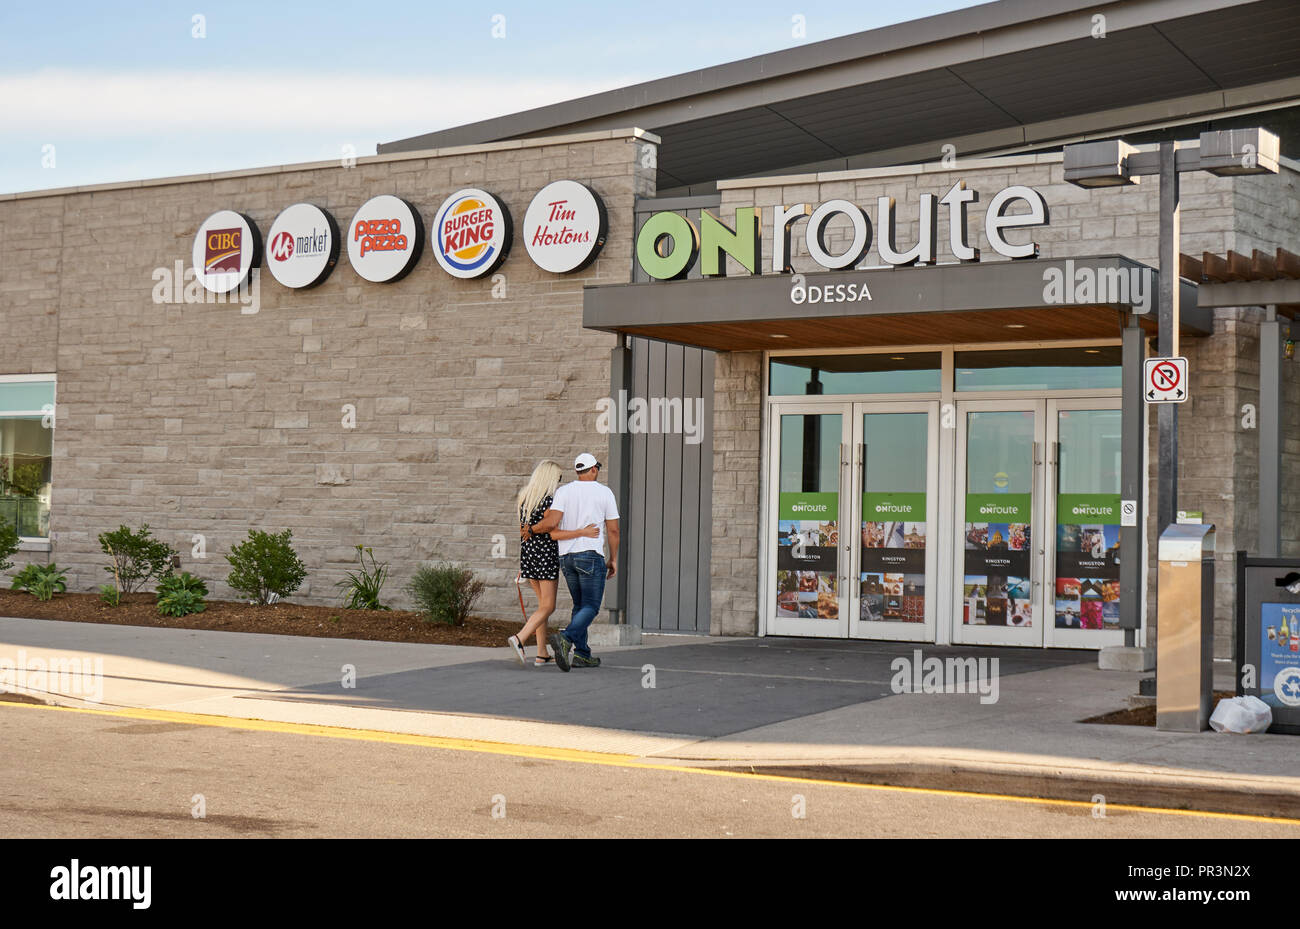 L'ONTARIO, CANADA - 12 juillet 2018 : service ONroute et bâtiment. Service ONroute est une société canadienne qui exploite l'autoroute aires de repos le long de l'autoroute 40 Banque D'Images